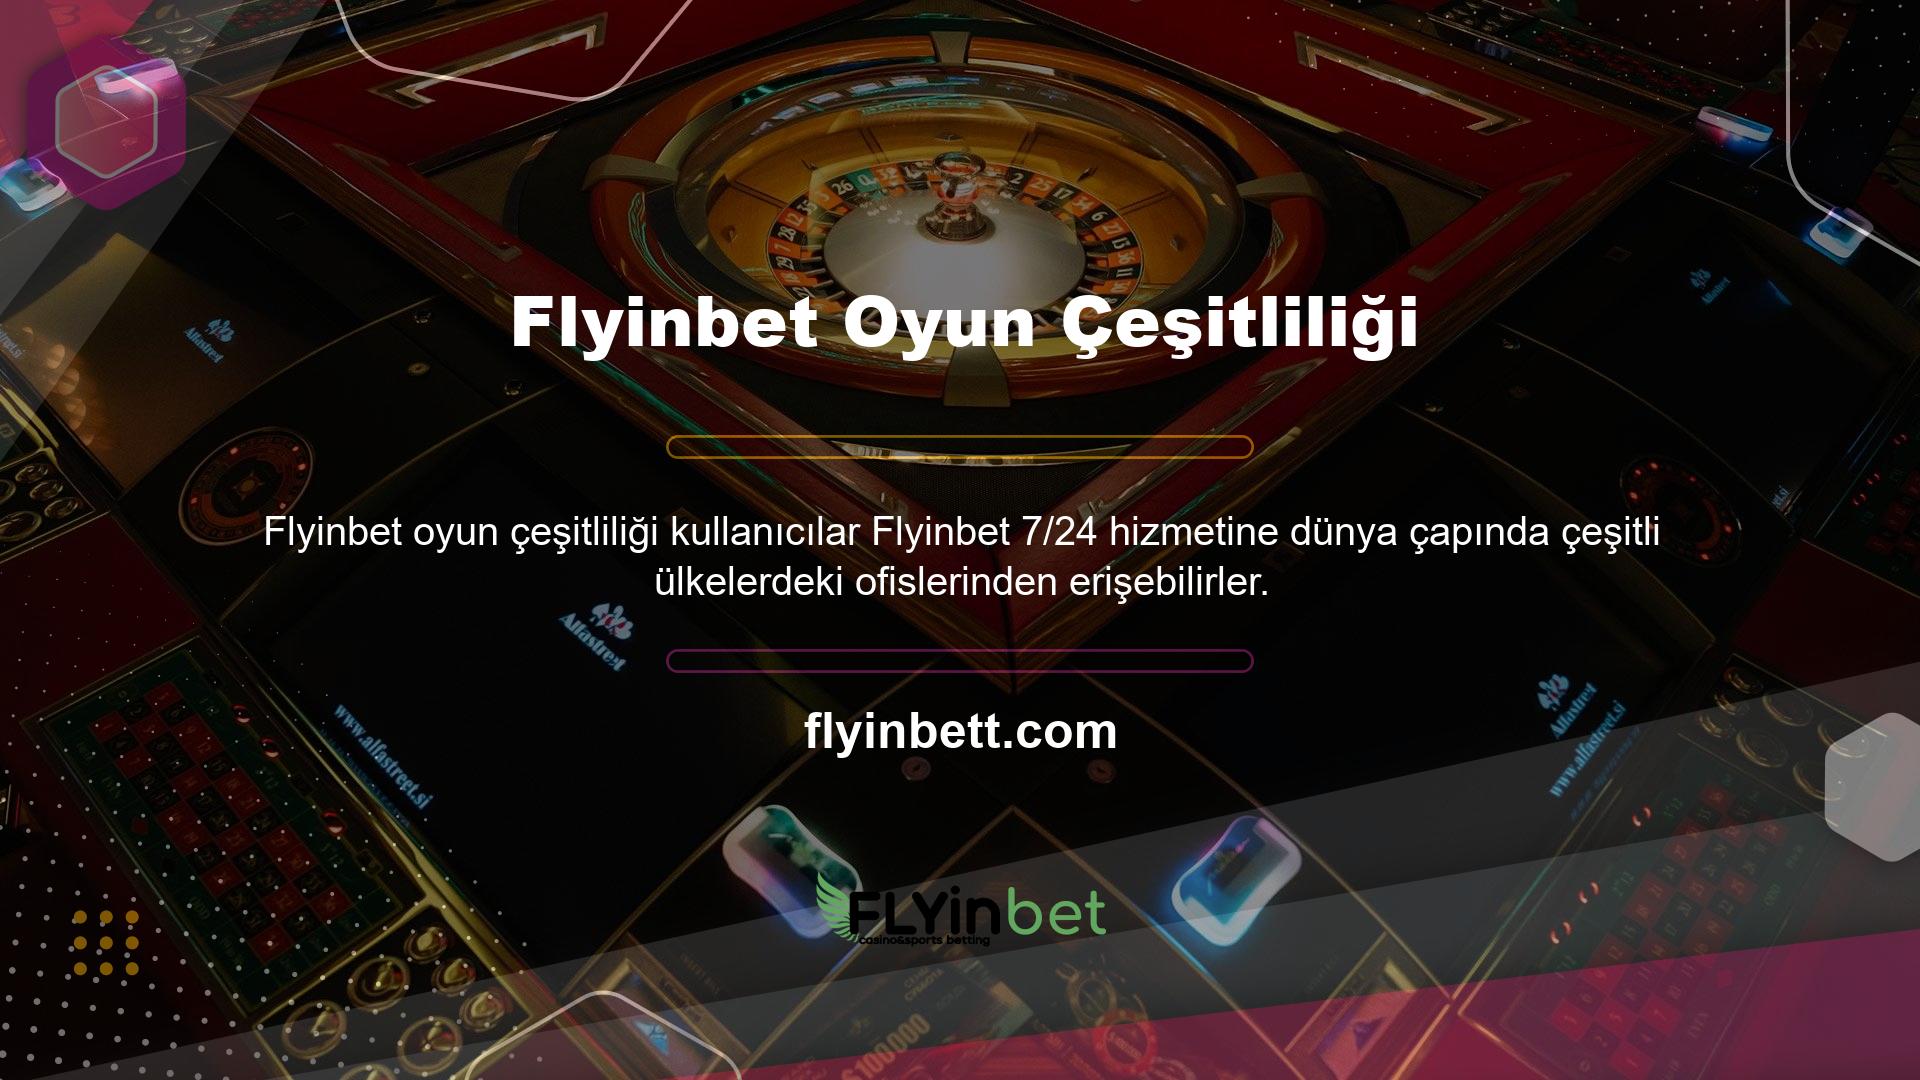 Türkiye'nin en büyük bahis platformlarından biri olan Flyinbet sunulan oyun çeşitliliği hâlâ sürpriz olmaya devam ediyor